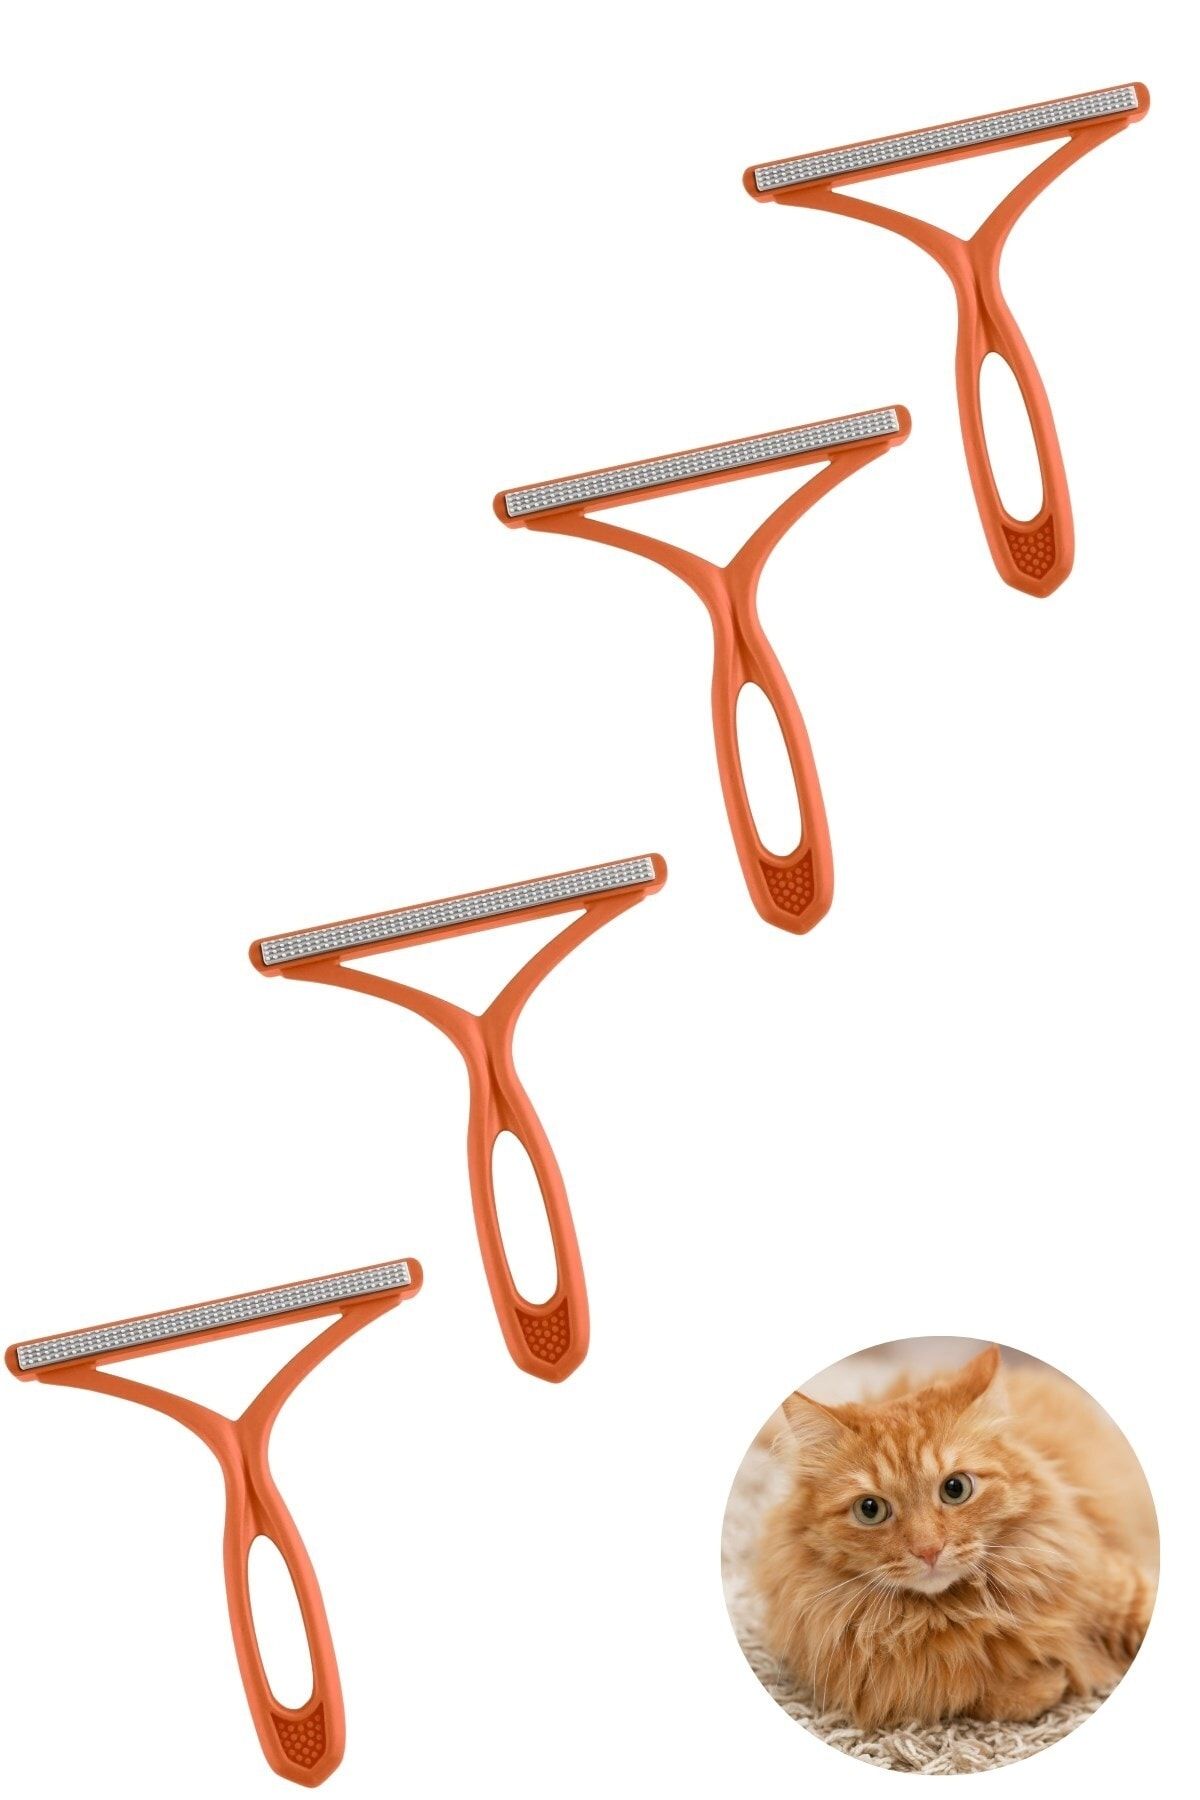 Buffer ® 4 Adet Kedi Köpek Tüy Toplayıcı Çift Taraflı Pamuk Tiftiği Ve Tüy Toplama Fırçası